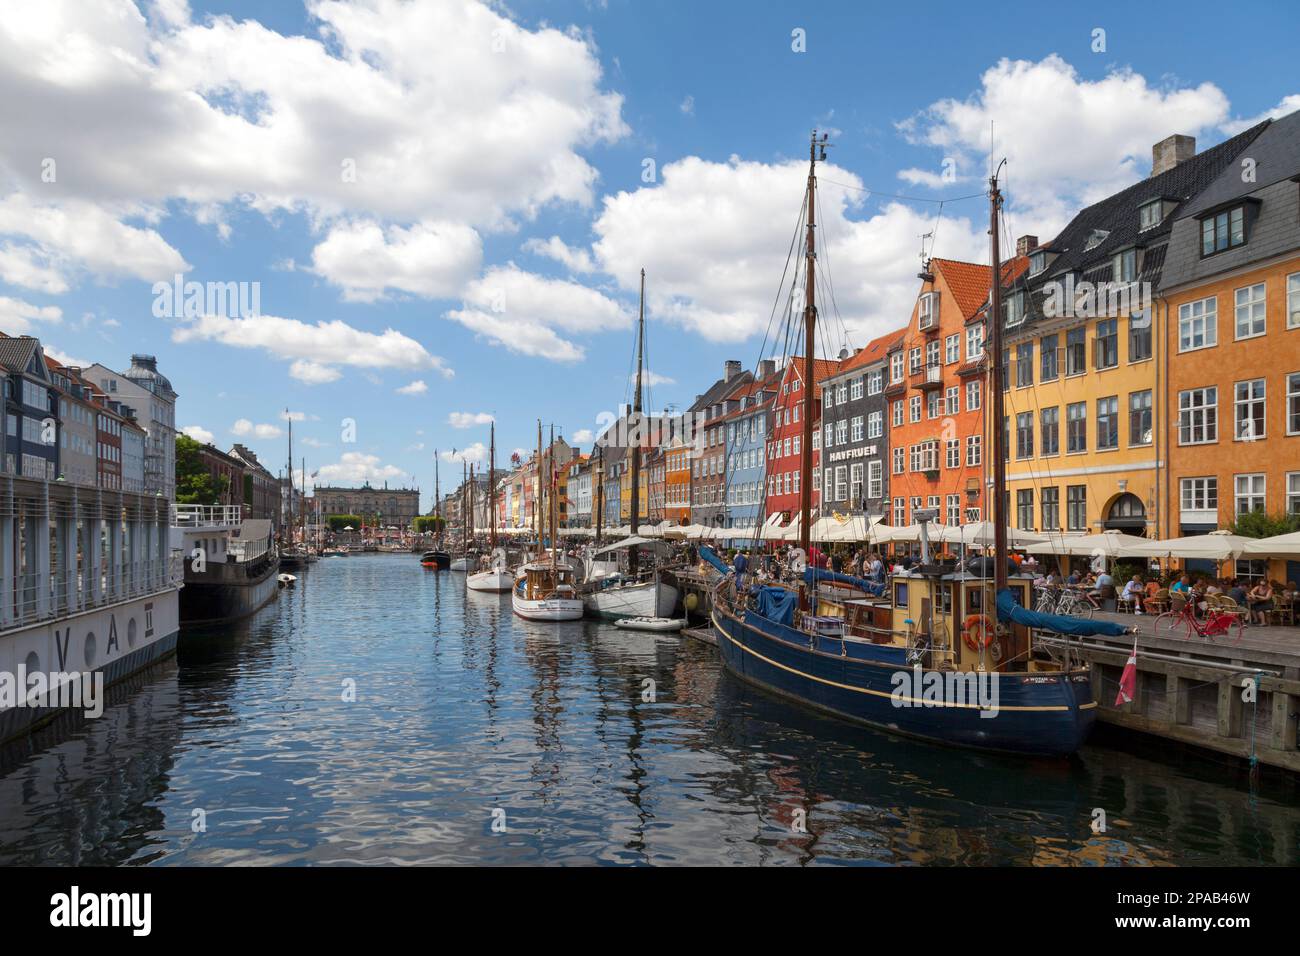 Copenhague, Danemark - 28 juin 2019: Nyhavn (danois pour « New Harbour ») est un quartier de 17th siècles au bord de l'eau, sur les canaux et dans le quartier des divertissements de Copenhague. Banque D'Images